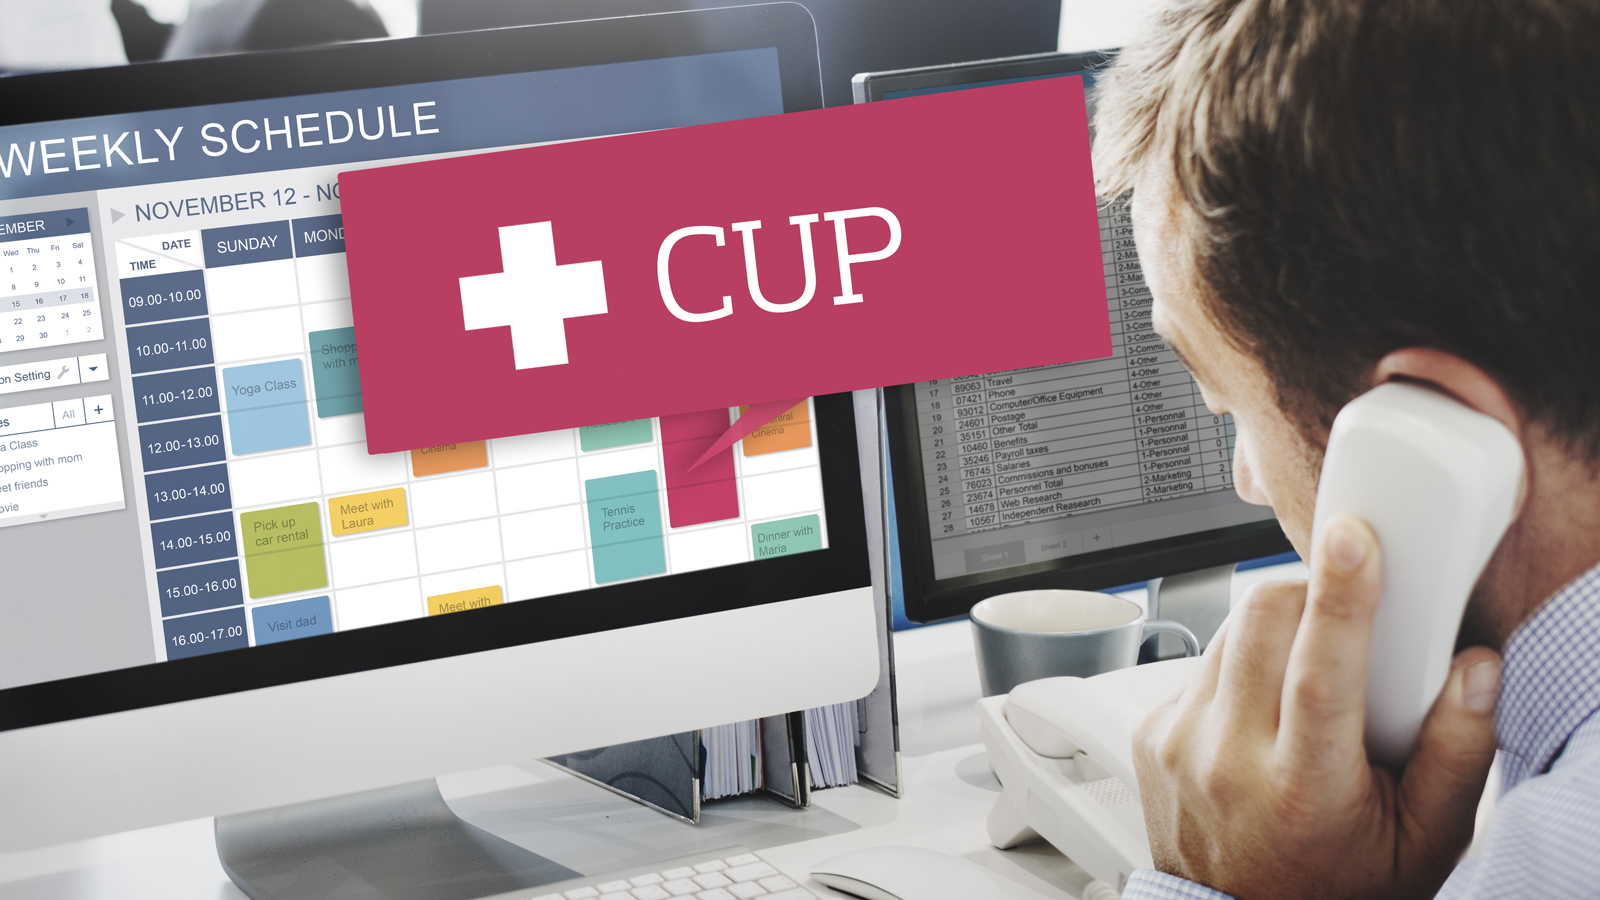 Assessore Fanelli: “CUP, attiva prenotazione online delle prestazioni”